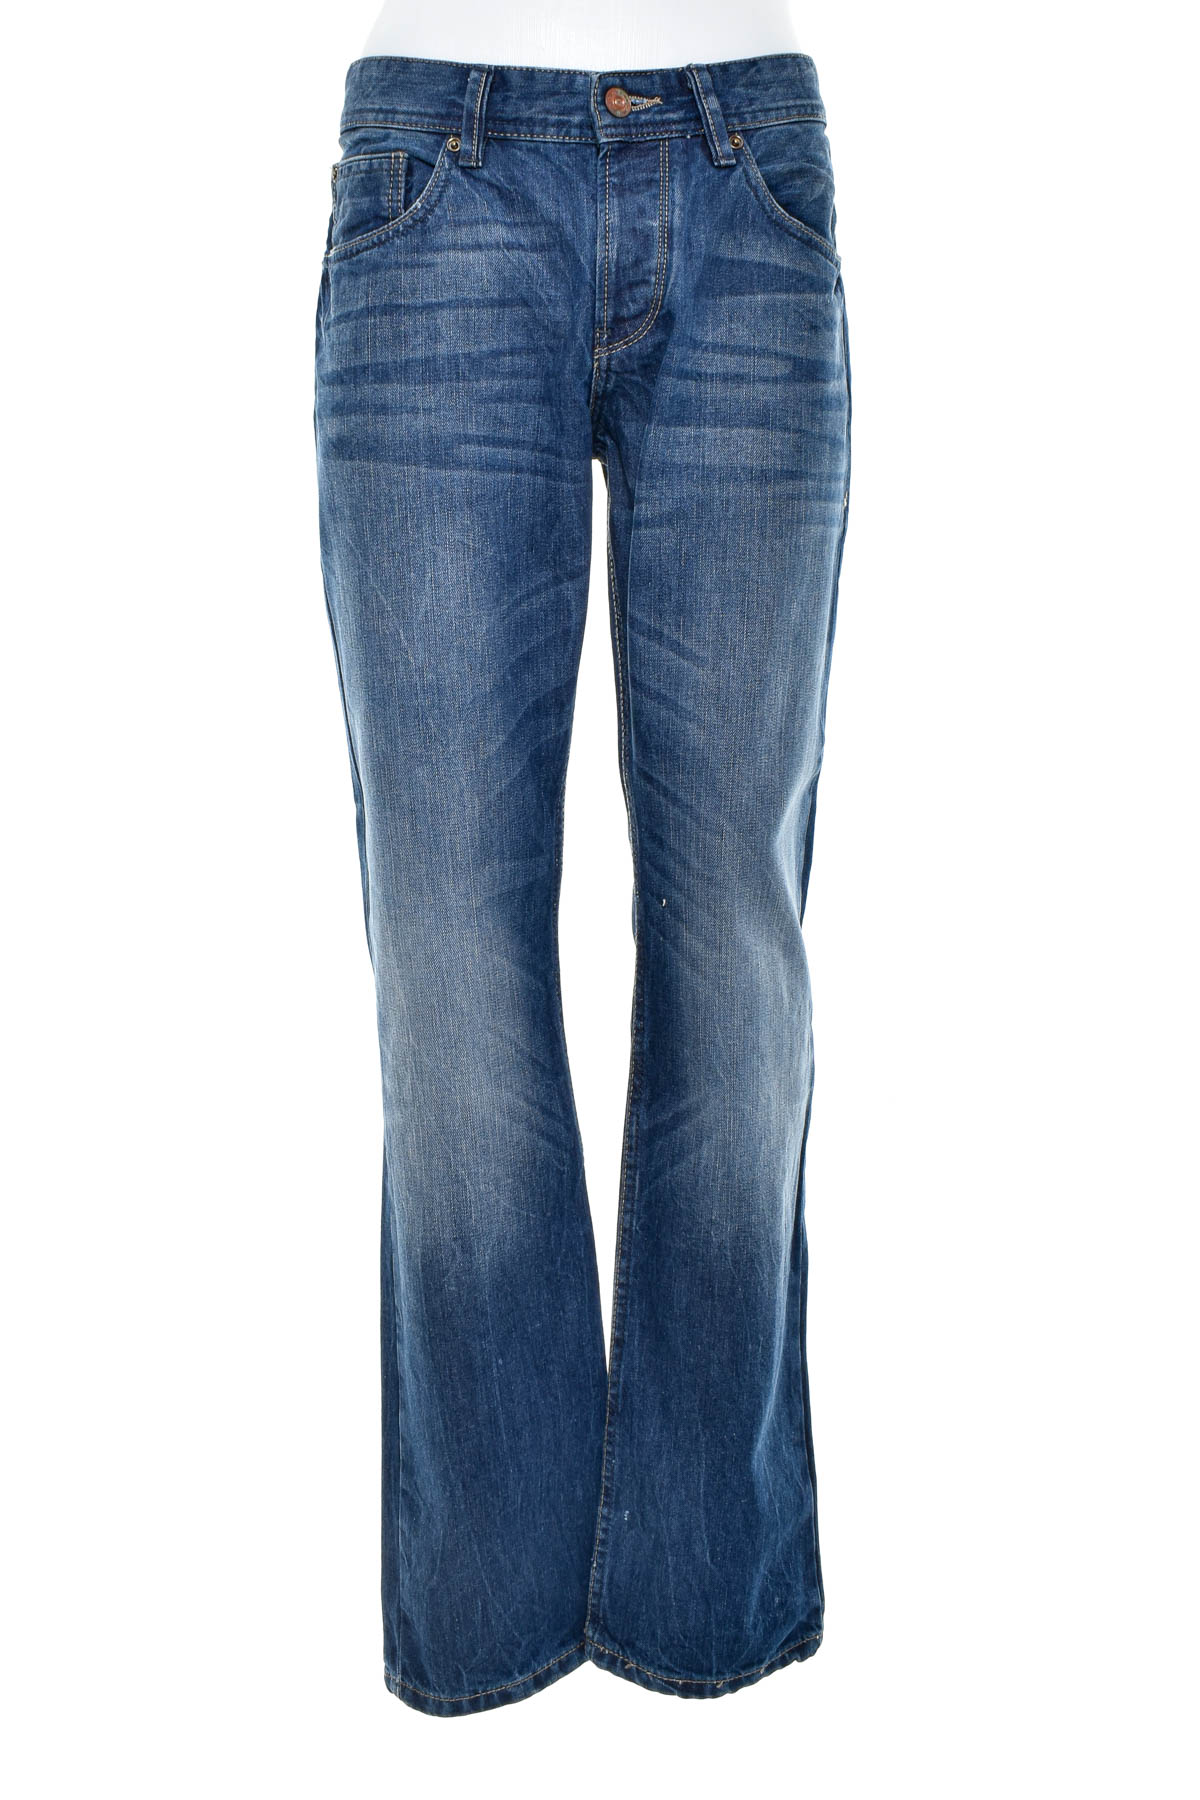 Jeans pentru bărbăți - Q/S - 0